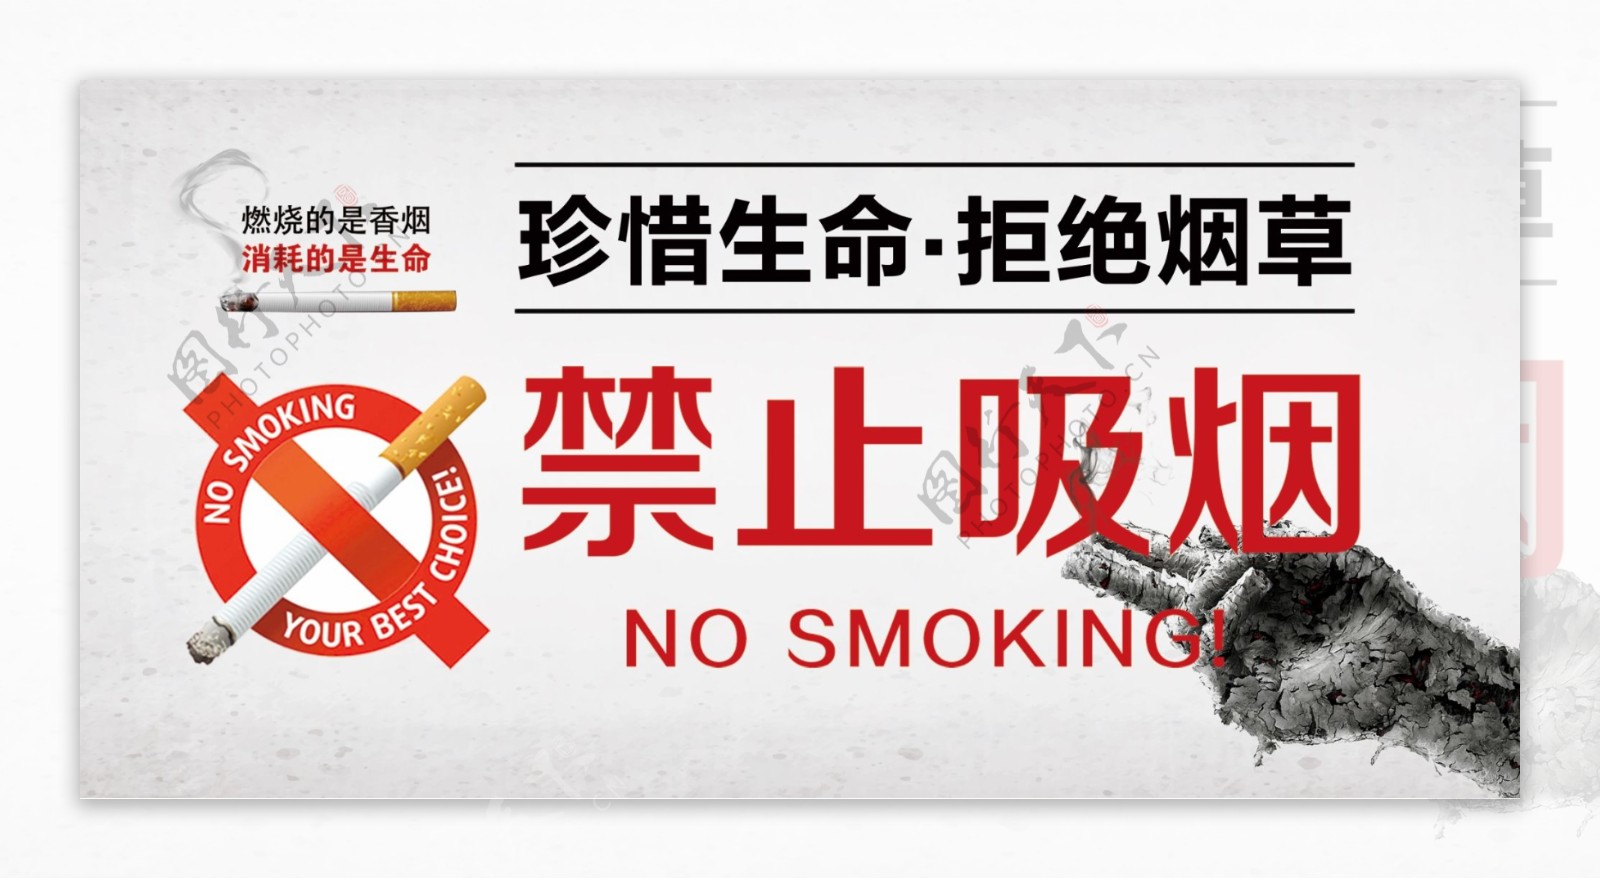 禁止吸烟桌牌